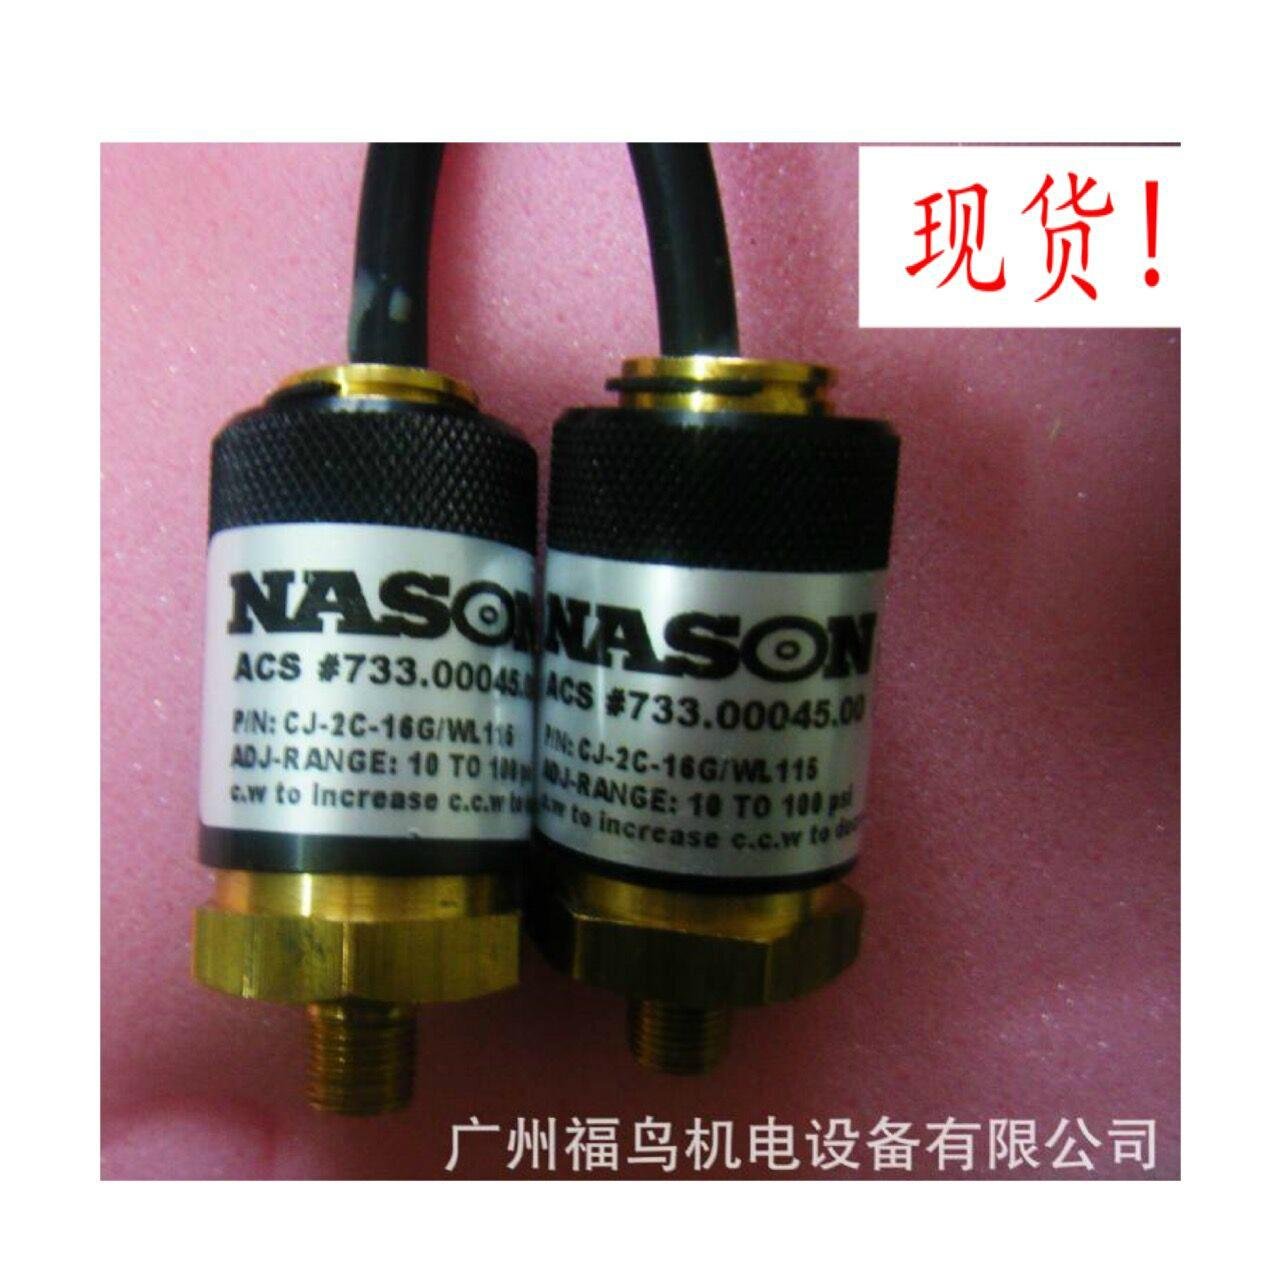 NASON壓力開關, 型號: CJ-2C-16G/WL115